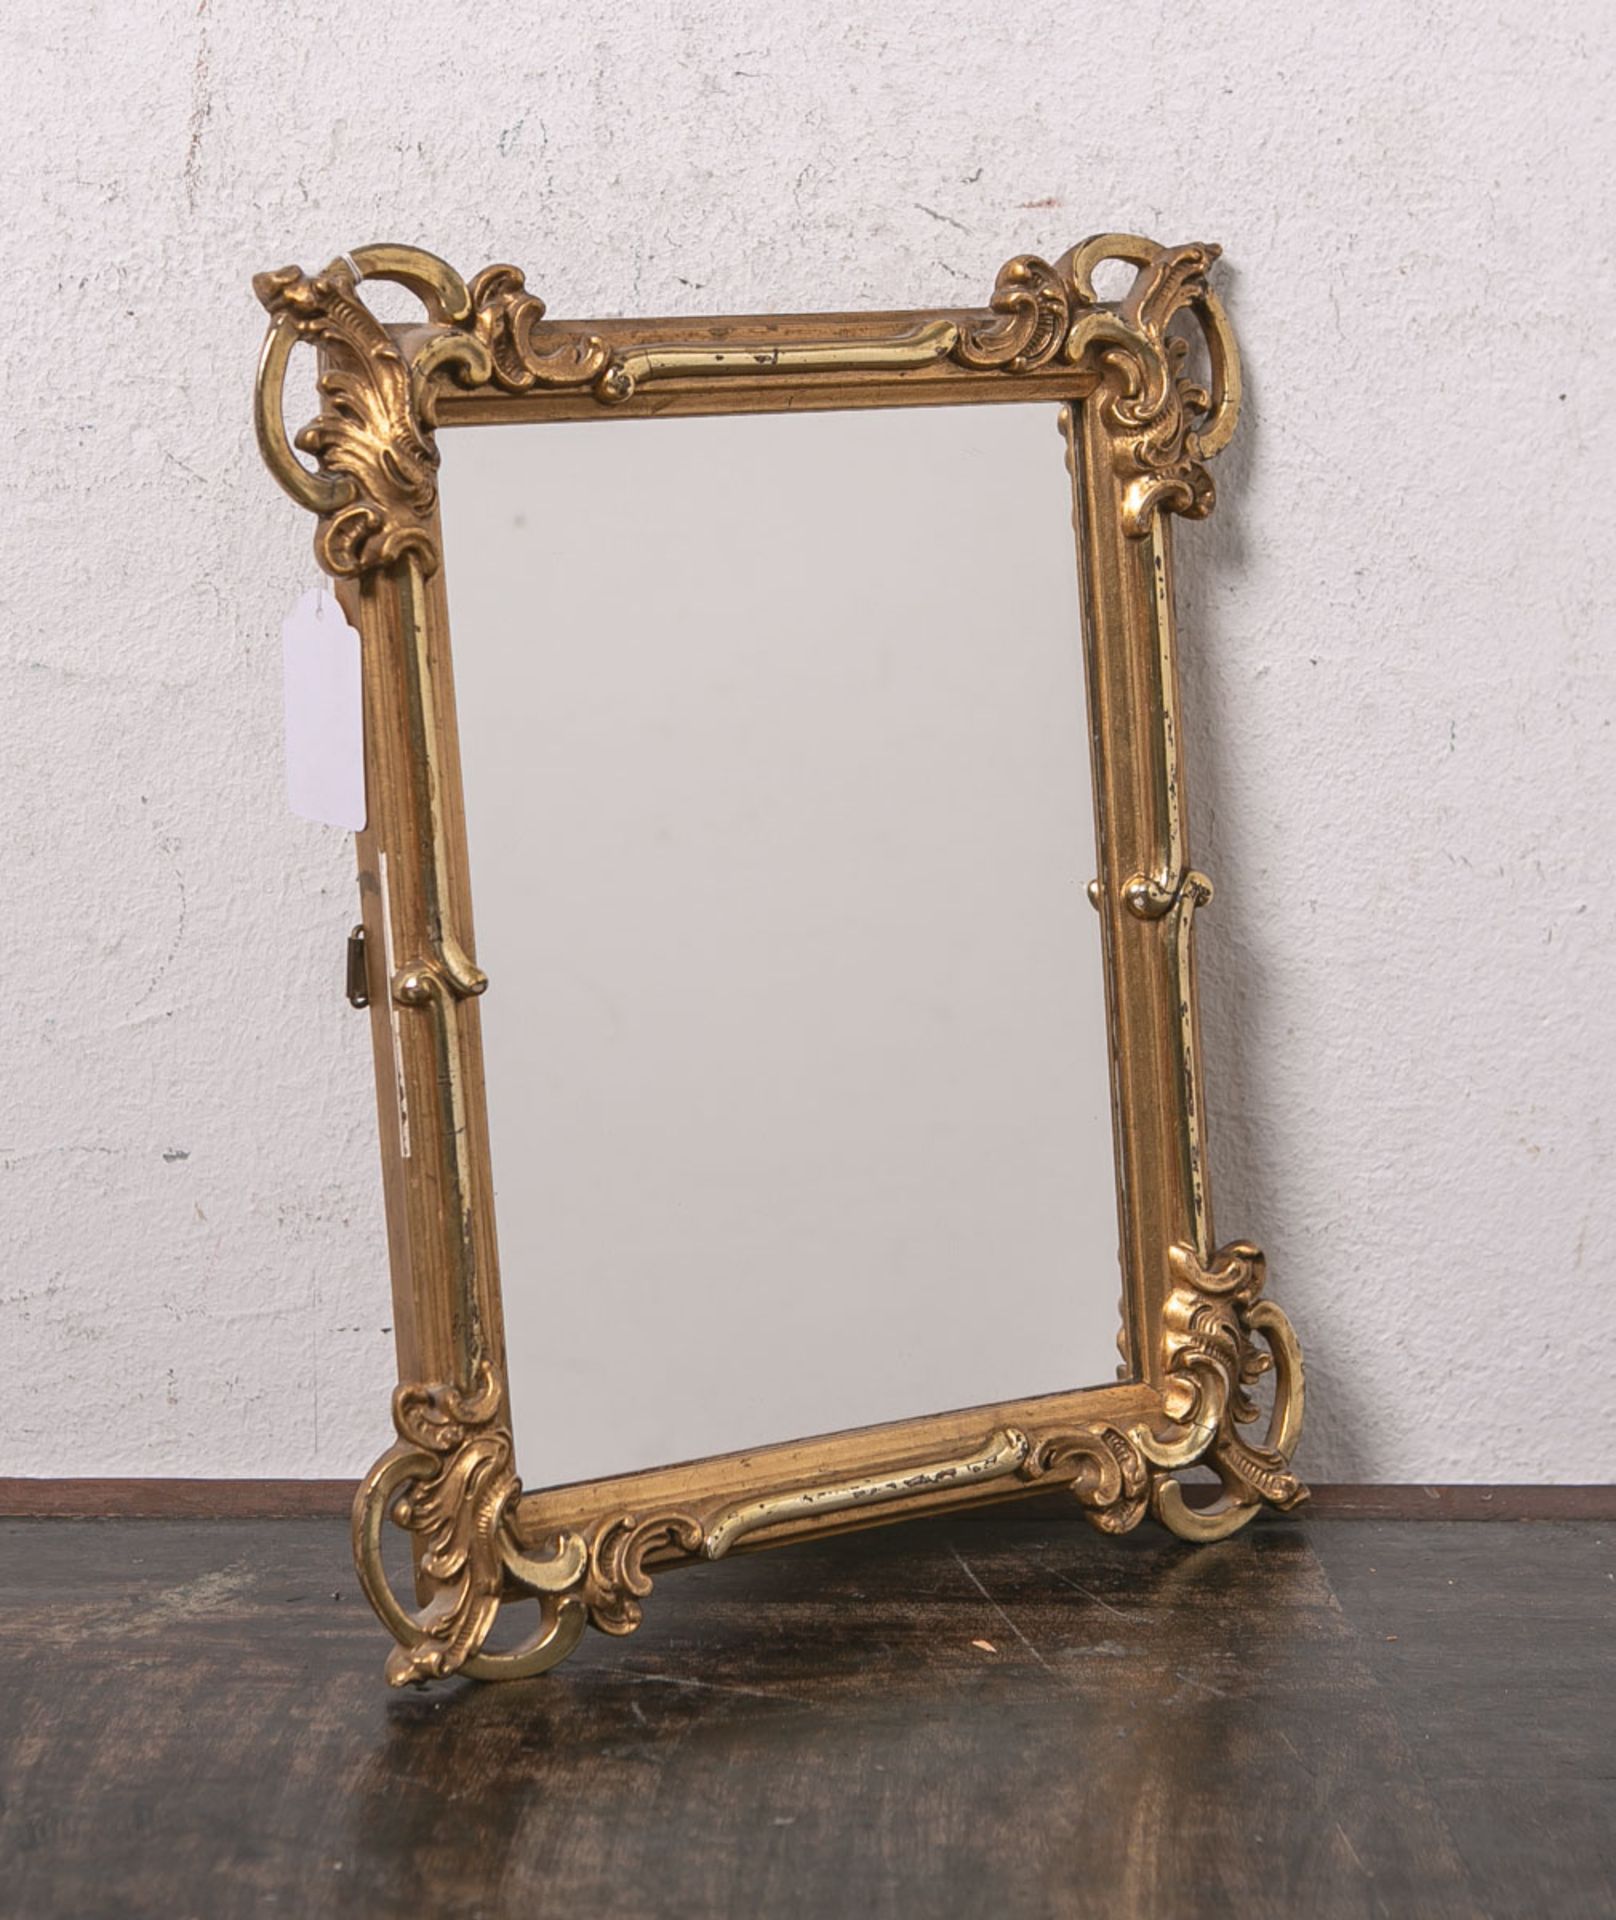 Kl. Spiegel, feine echt vergoldete Rahmung, im Stil des Barock, teils matt, teils poliert, ca. 25